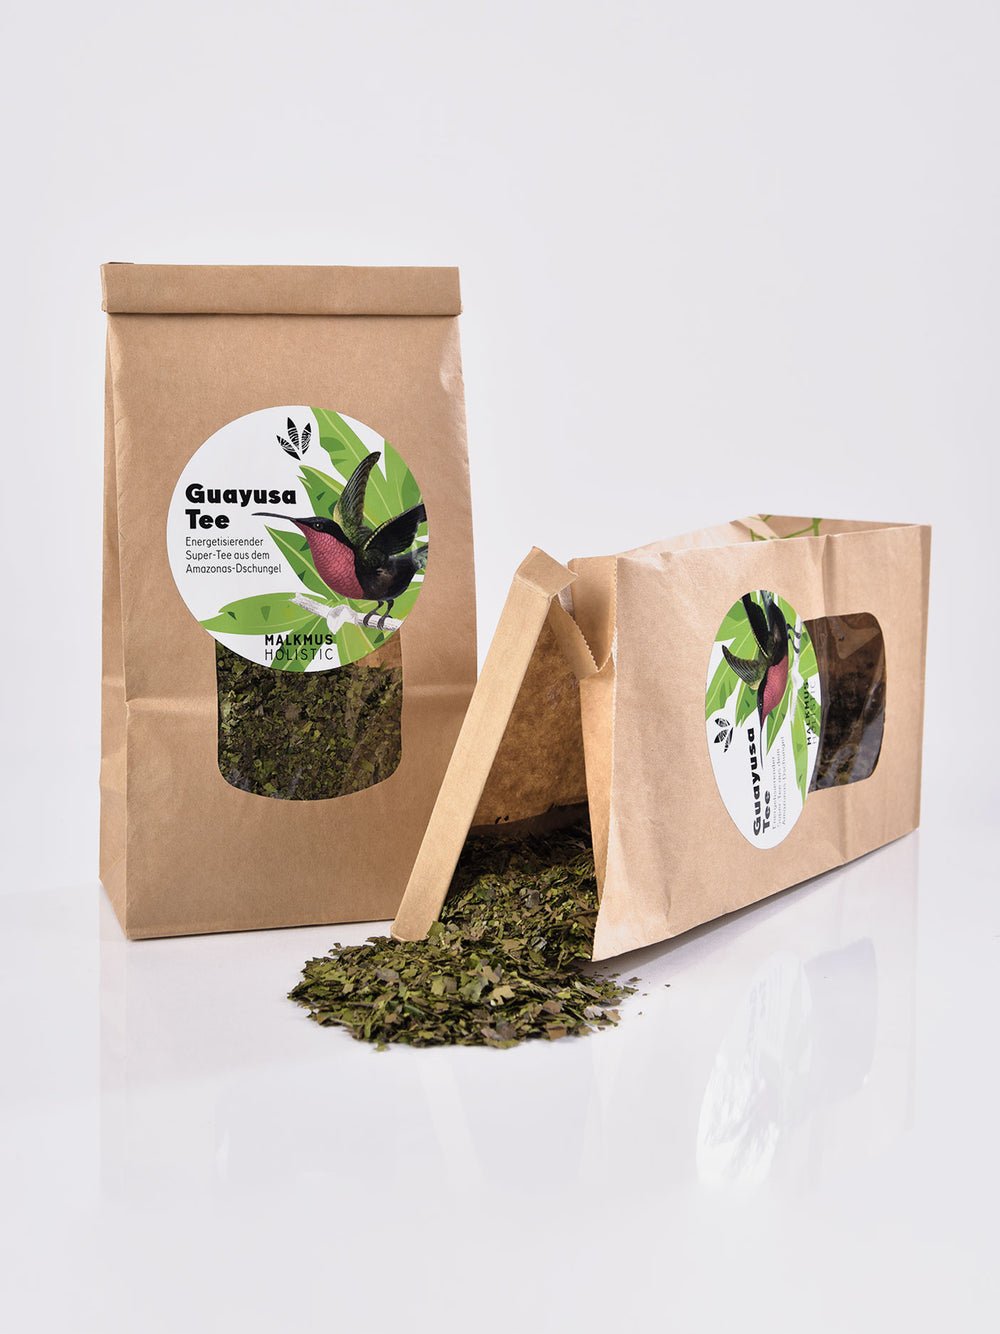 Guayusa Tee - Natürlicher Energieschub für Körper und Geist - Malkmus Holistic